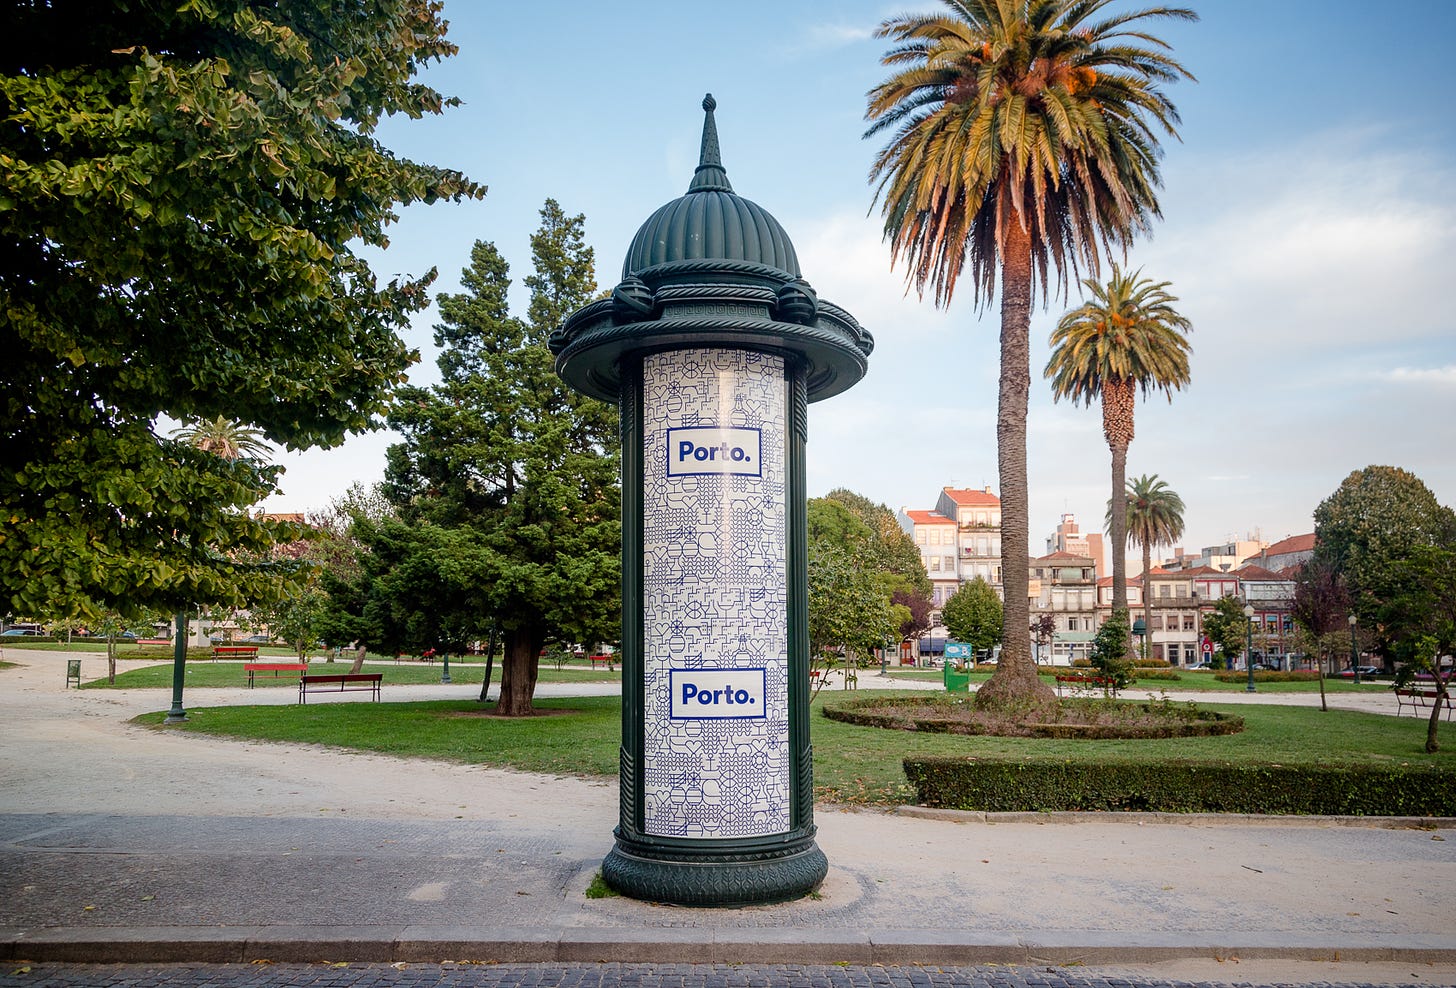 In un parco di Porto, sulla facciata di una torretta decorativa compare il manifesto della città con la scritta Porto. in azzurro dentro un rettangolo bianco.